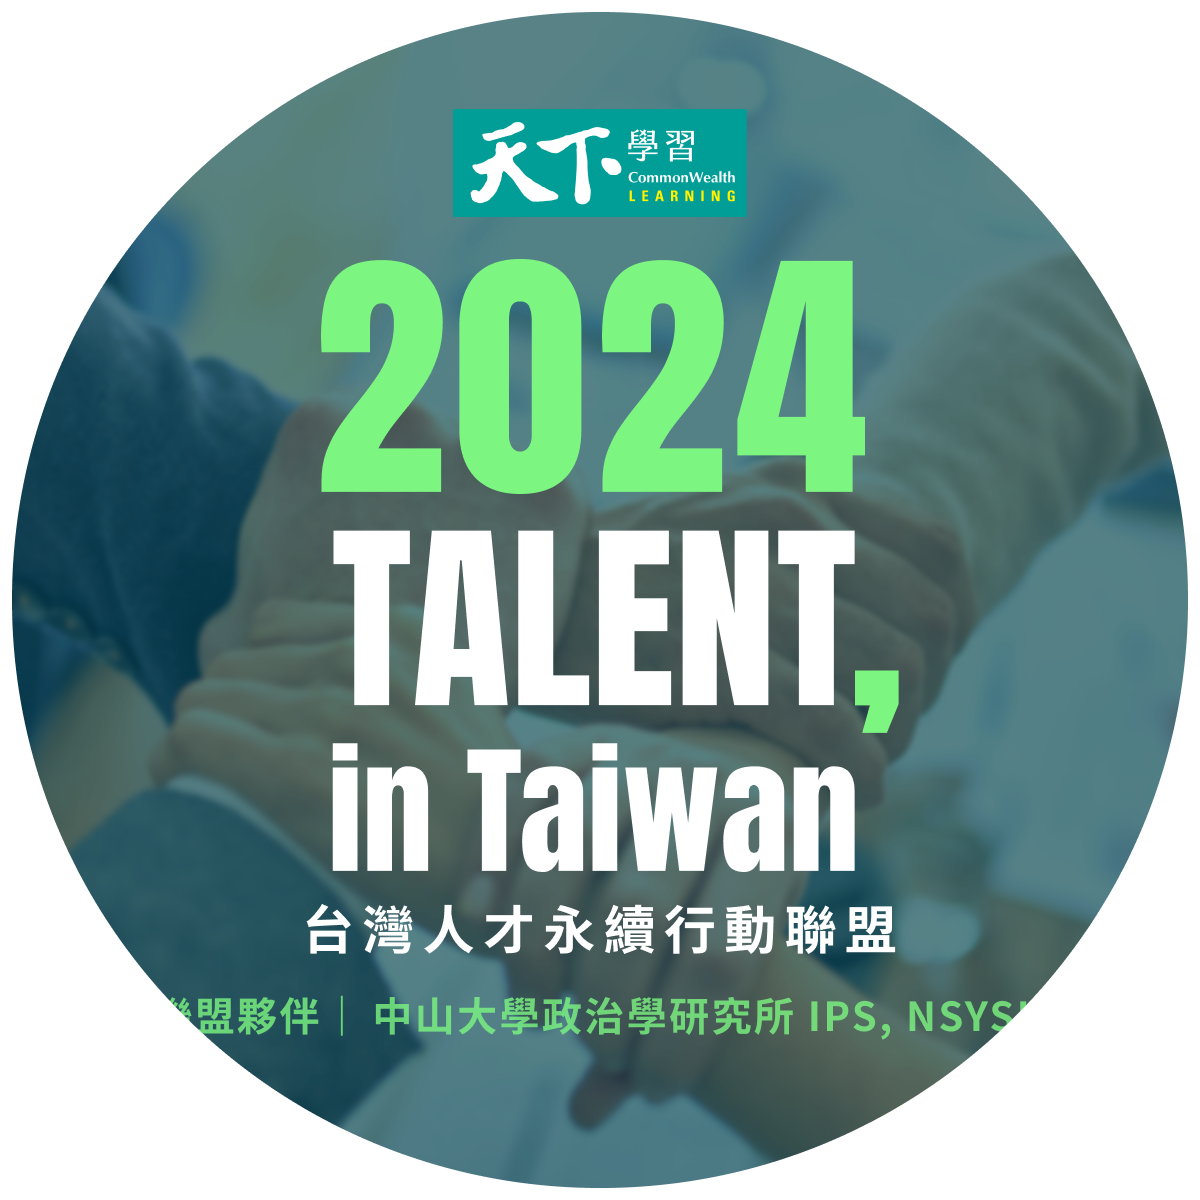 中山政研獲認證加入「2024 TALENT, in Taiwan，台灣人才永續行動聯盟」